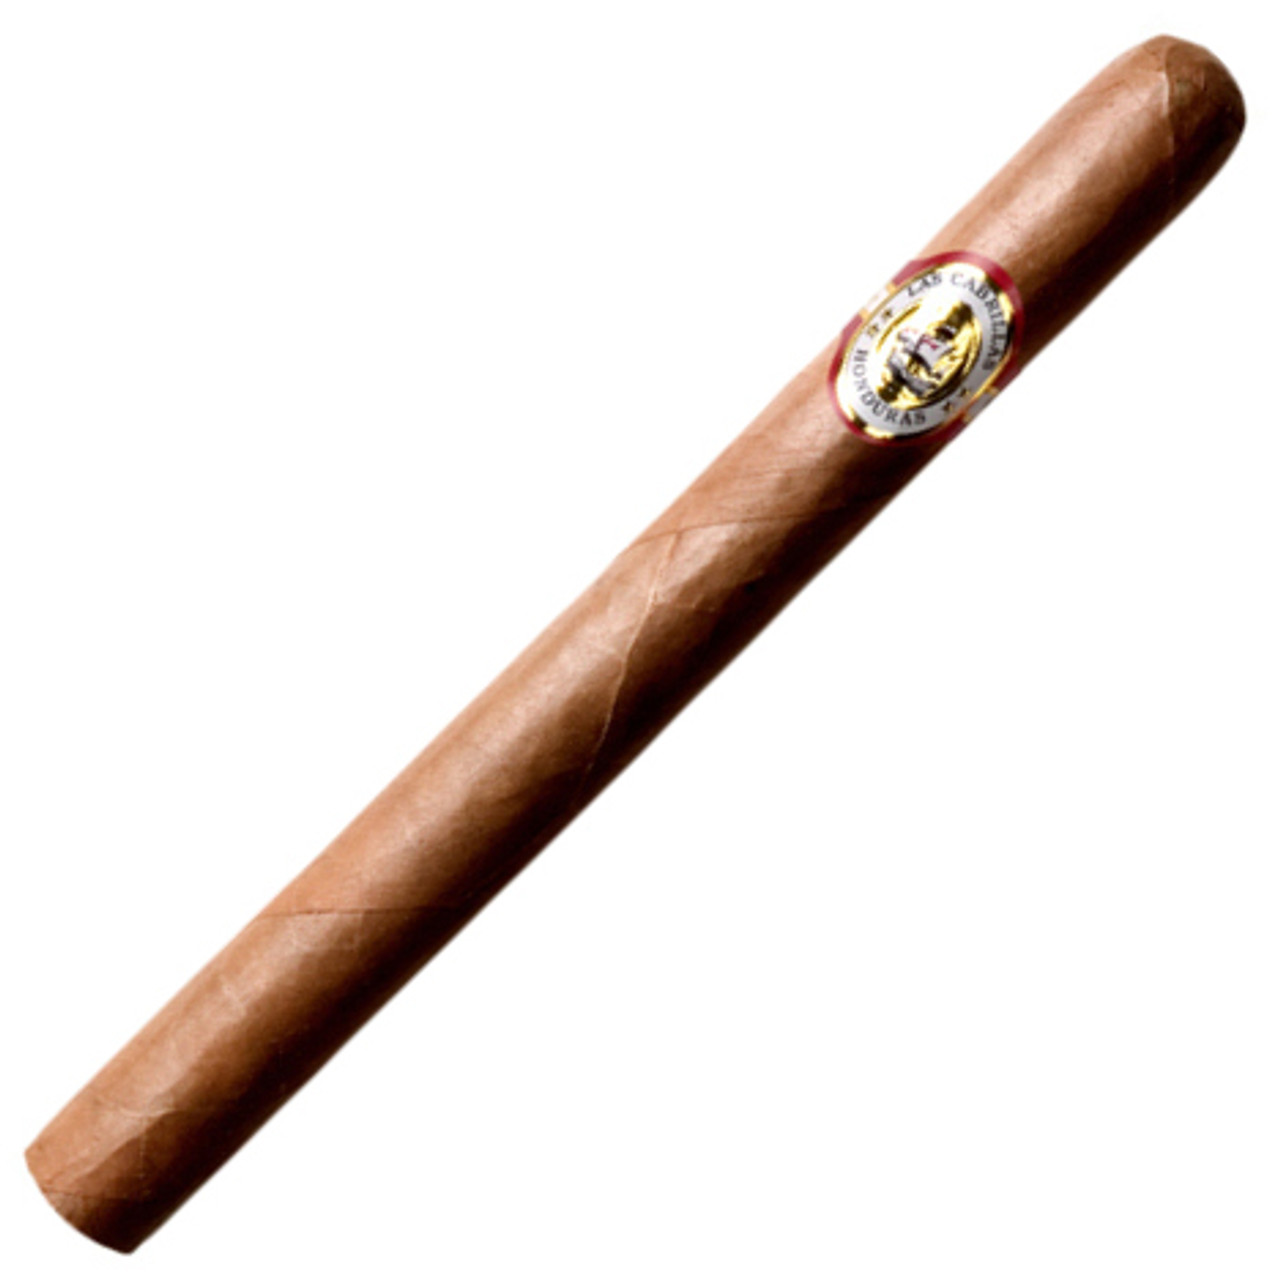 Las Cabrillas Columbus Cigars - 8.25 x 52 (Box of 15)